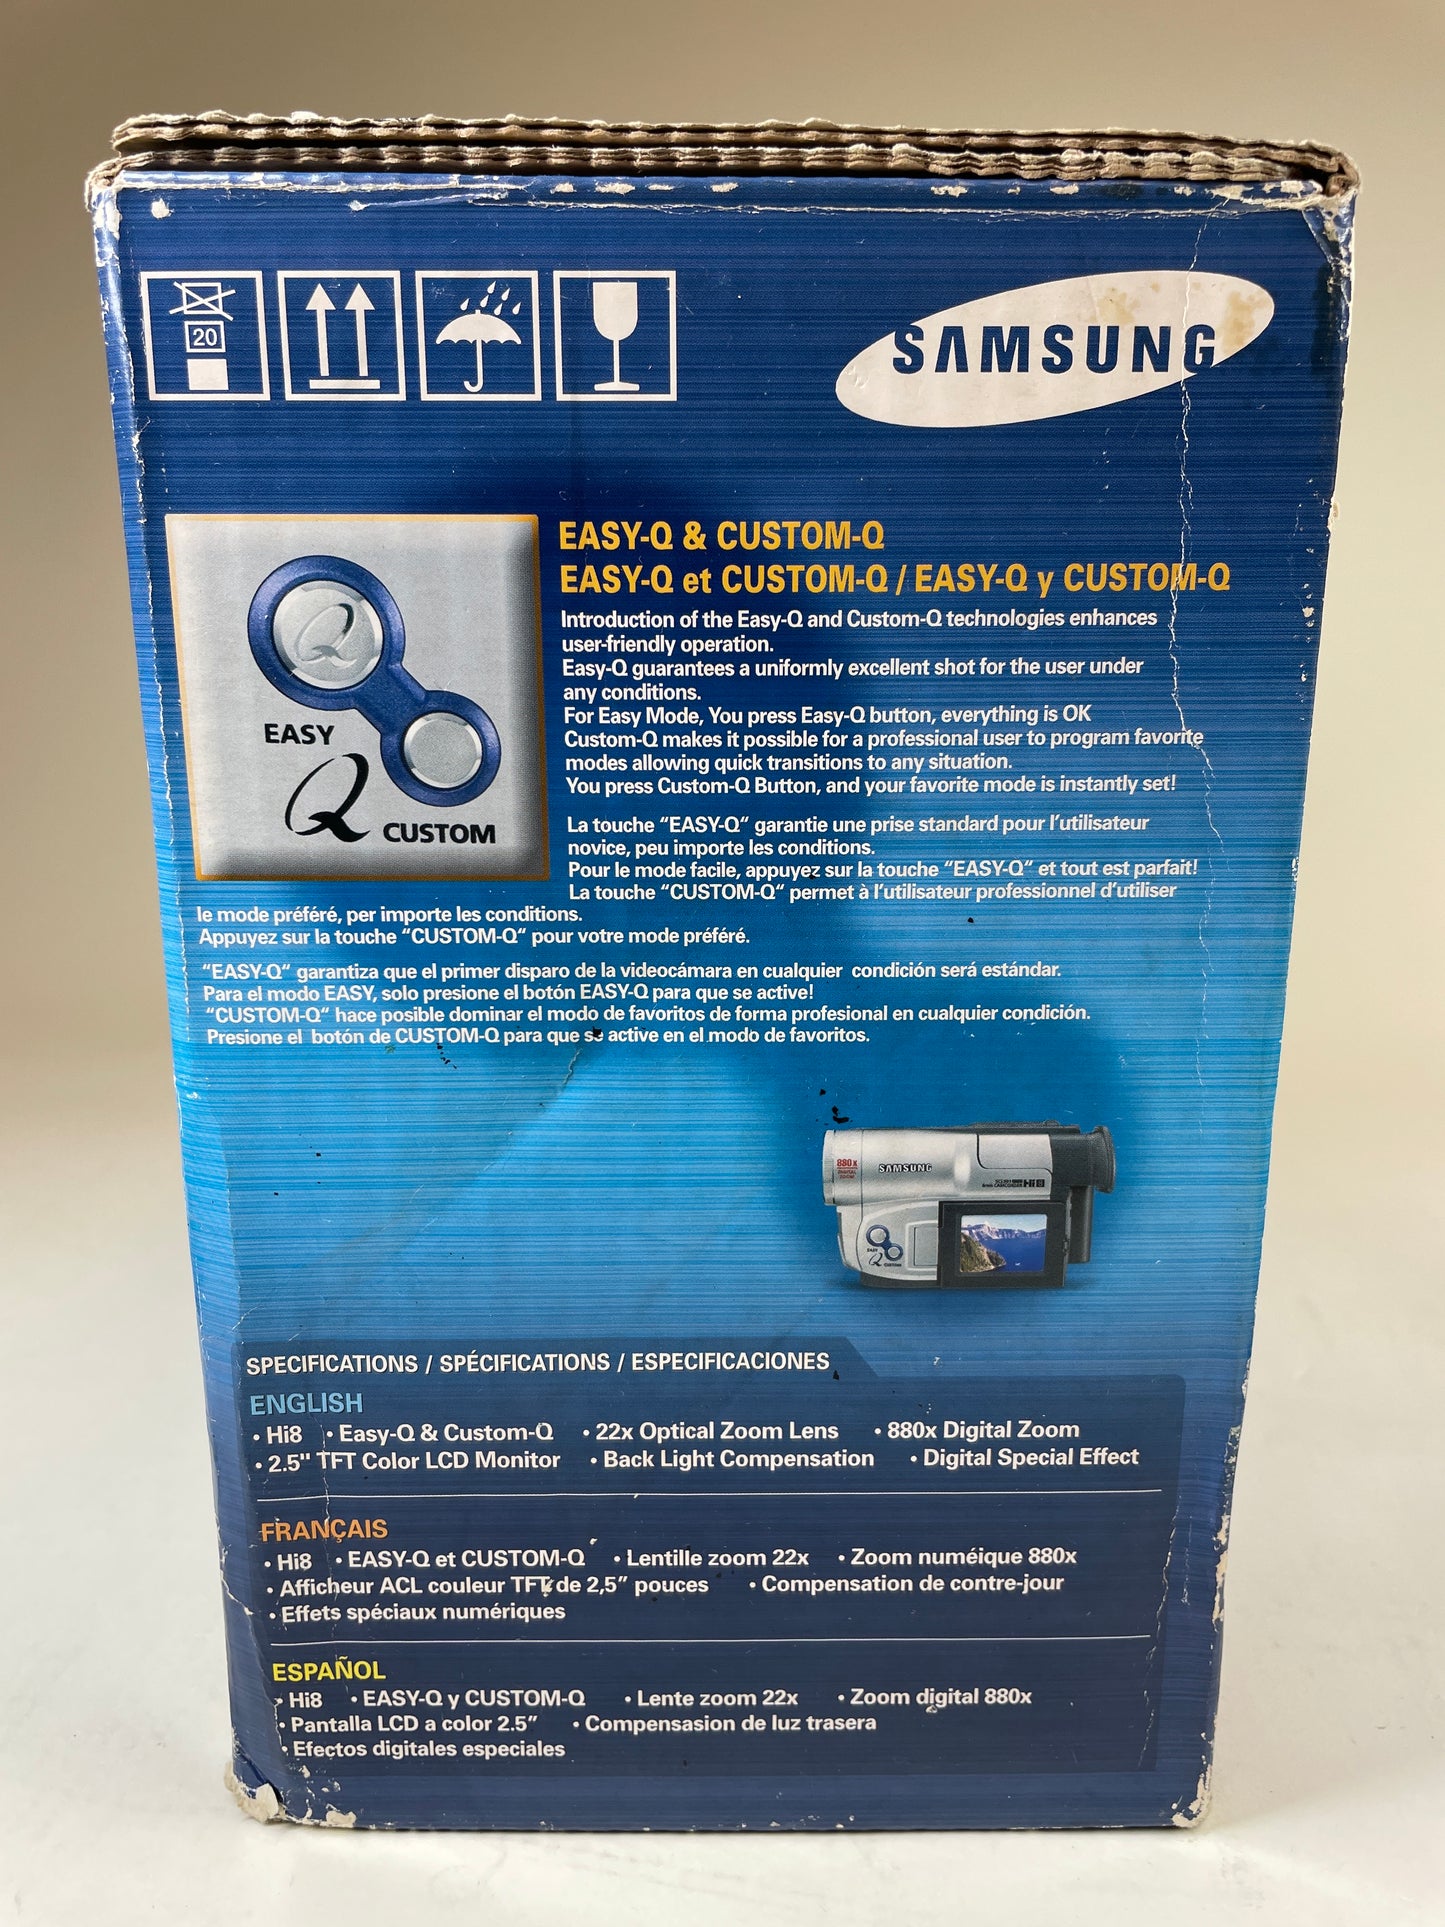 Samsung Handycam Hi8 Hi-8 Analog Camcorder SCL901